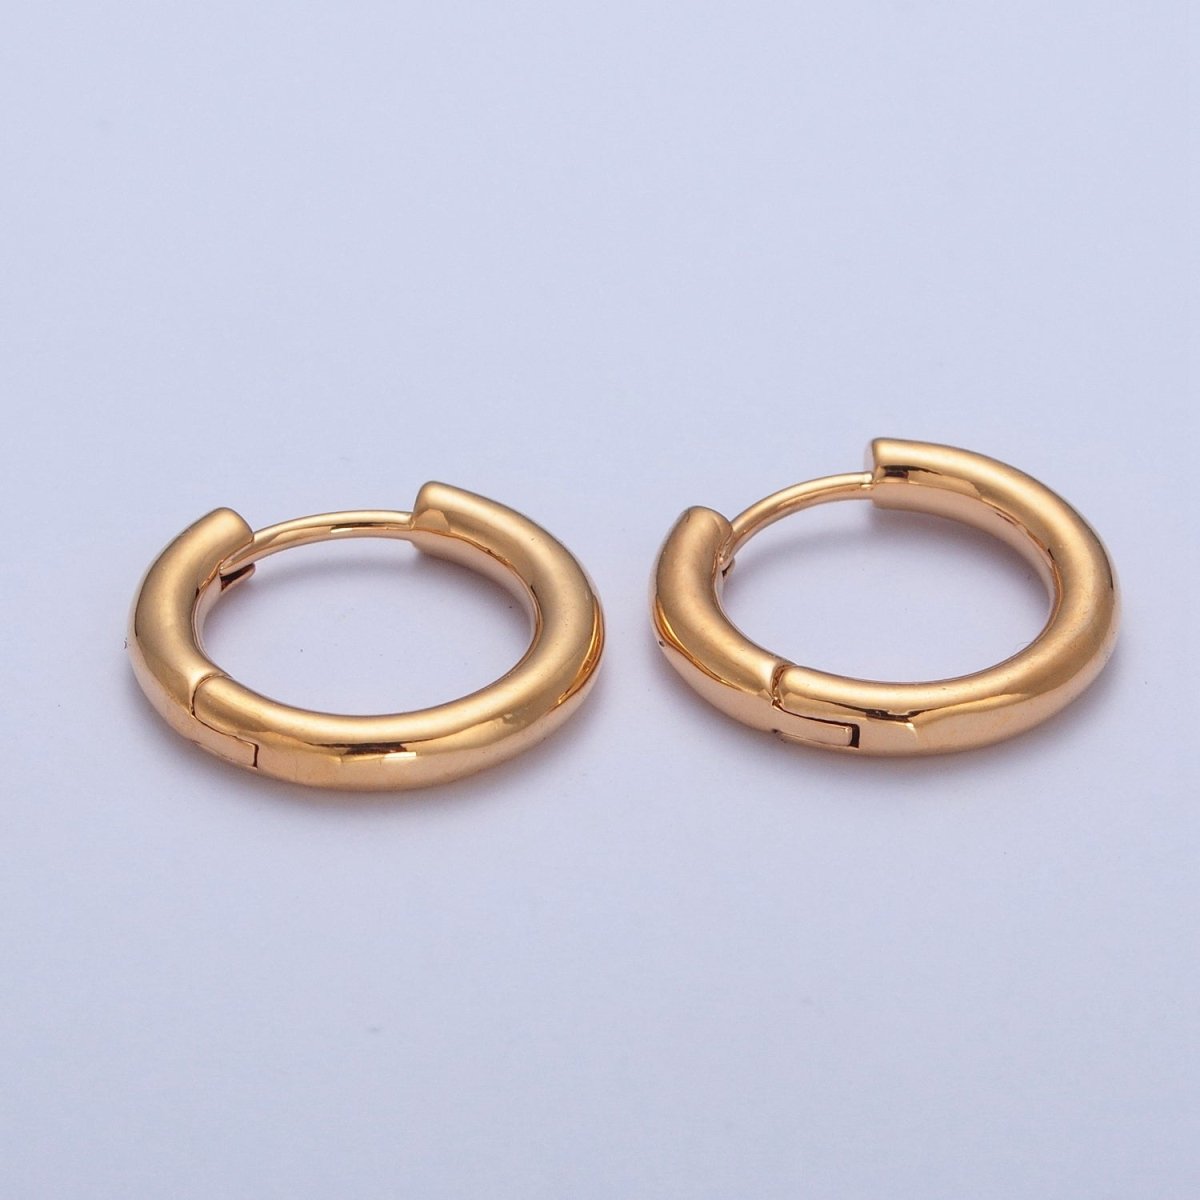 24K Gold Filled Minimalist 13mm / 15mm Huggie Hoop Earrings | P-408 P-409 - DLUXCA